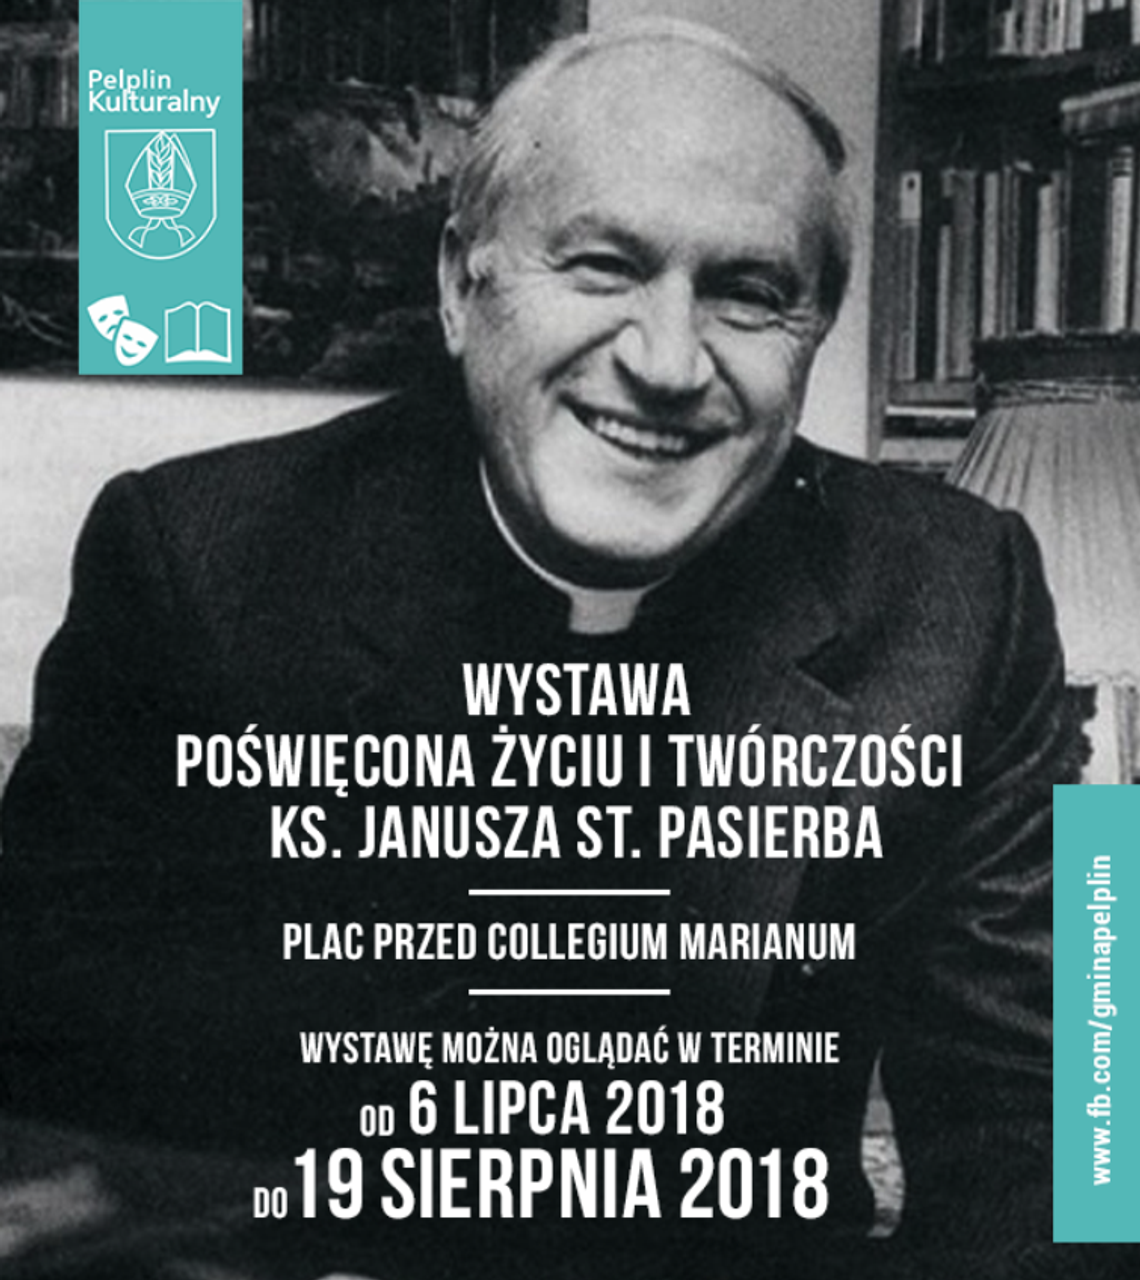 W Pelplinie można oglądać wystawę poświęconą życiu i twórczości ks. Janusza St. Pasierba